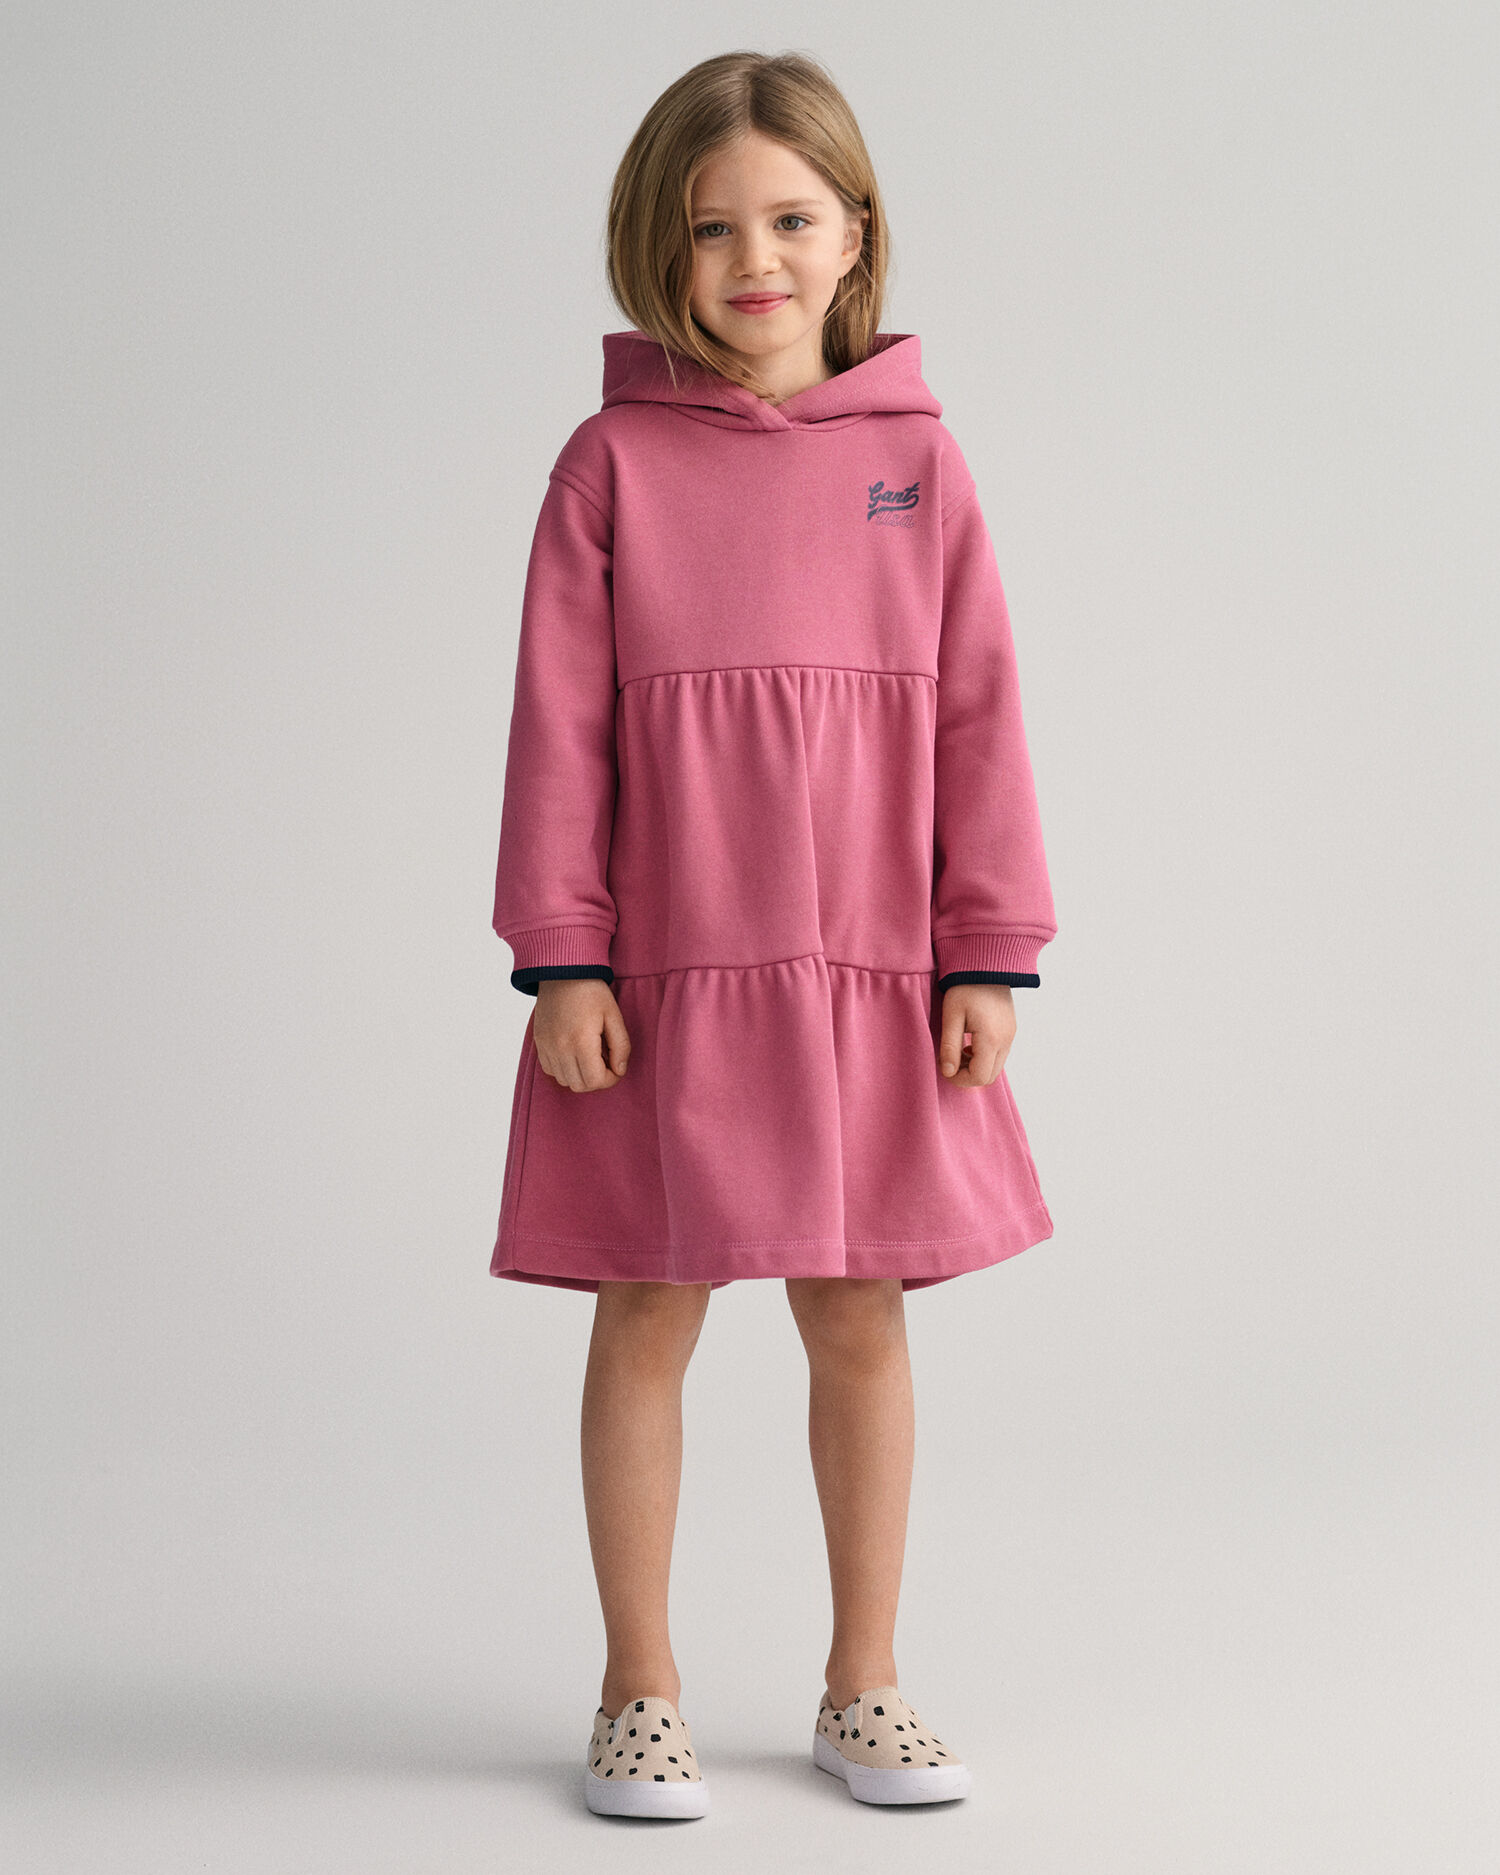 Girls hooded dress | Garments Manufacturer | Kalauren.com